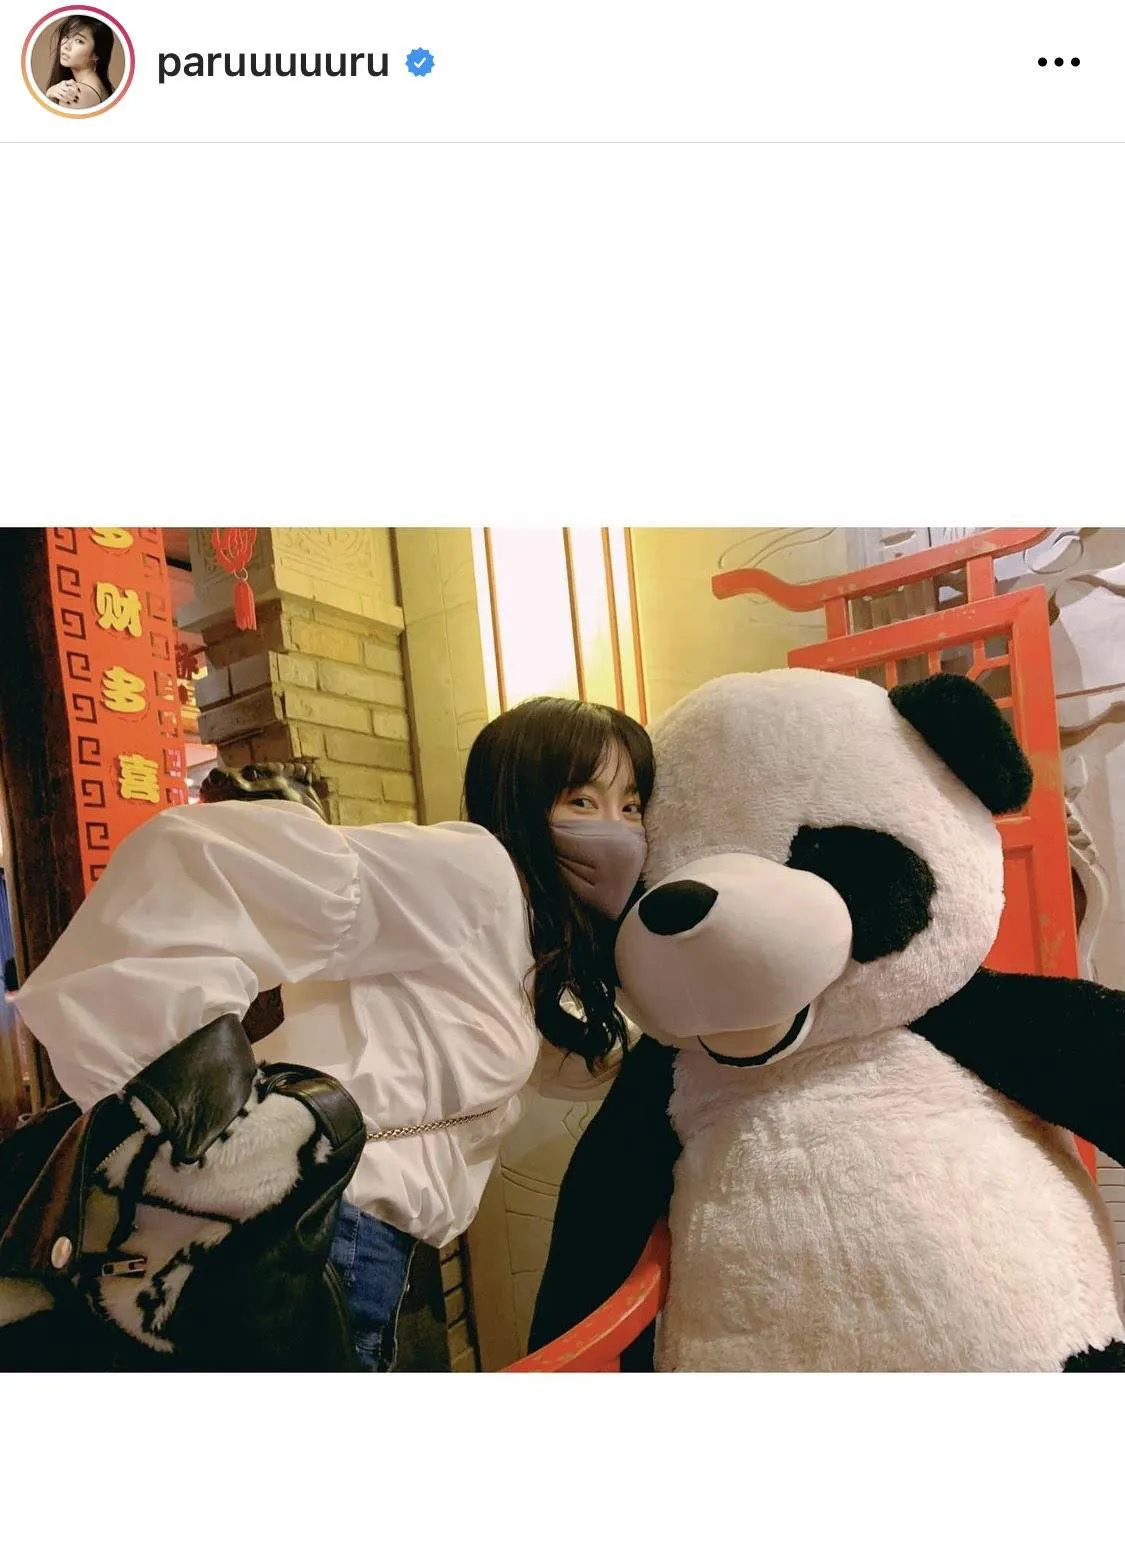 パンダに顔を寄せてカメラ目線の島崎遥香